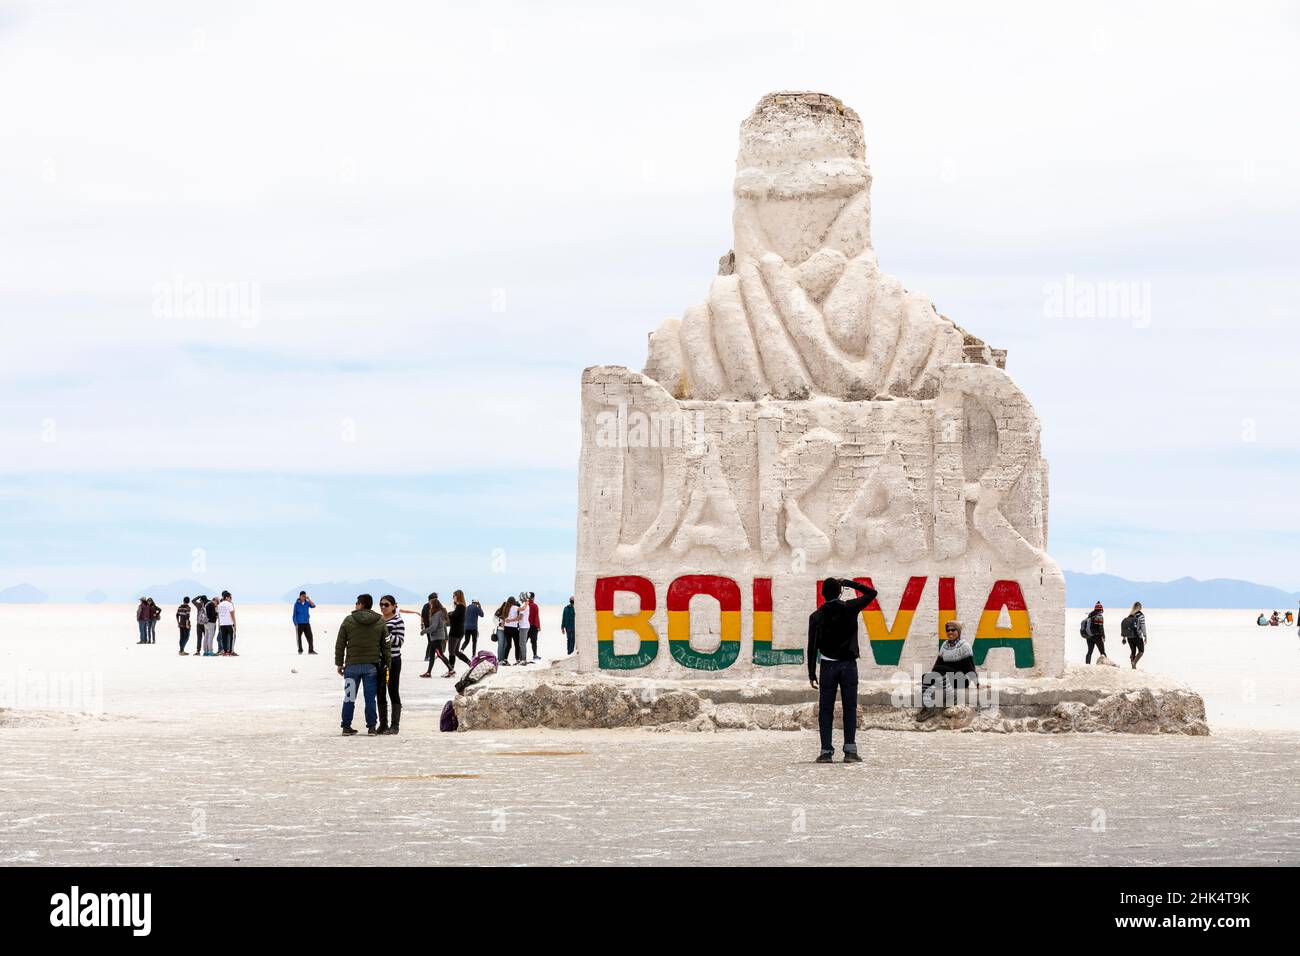 Statue d'accueil exposée sur les appartements de sel, Salar de Uyuni, province de Daniel Campos, Bolivie, Amérique du Sud Banque D'Images